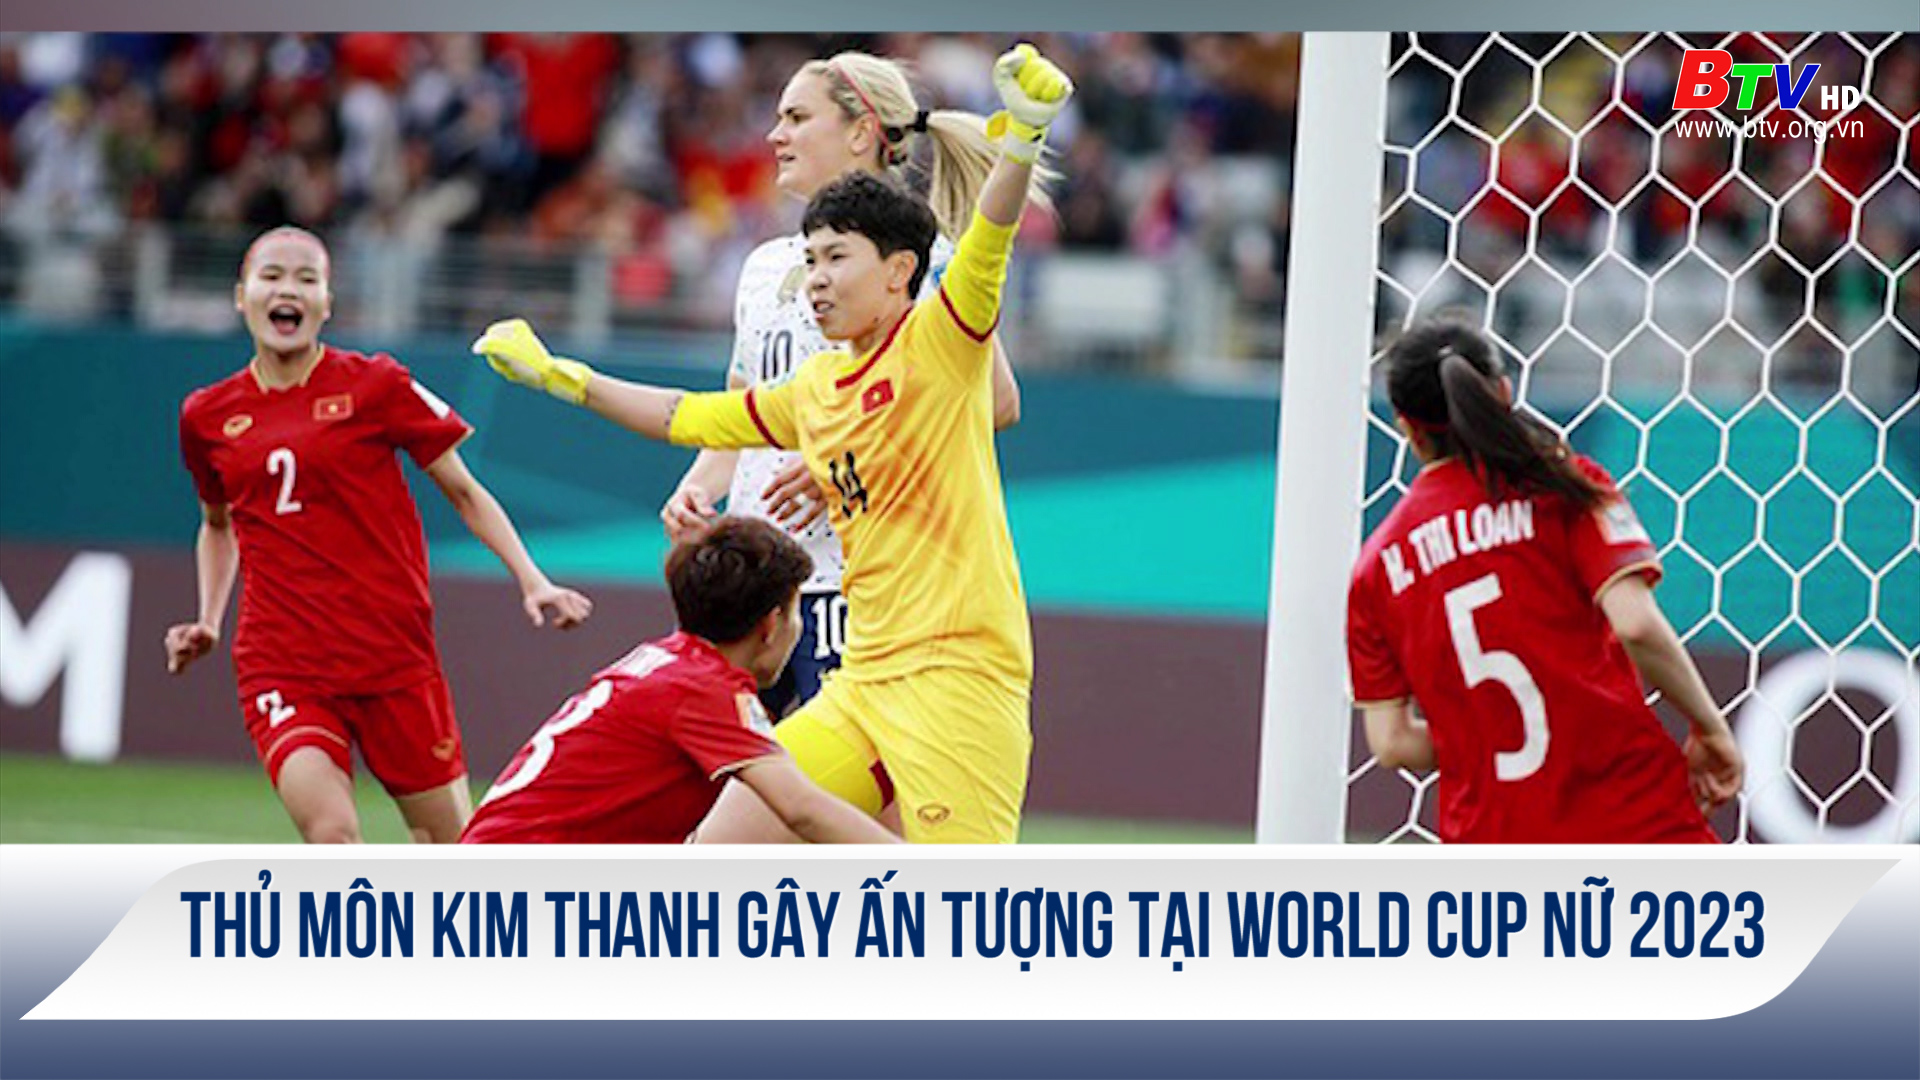 Thủ môn Kim Thanh gây ấn tượng tại World Cup Nữ 2023